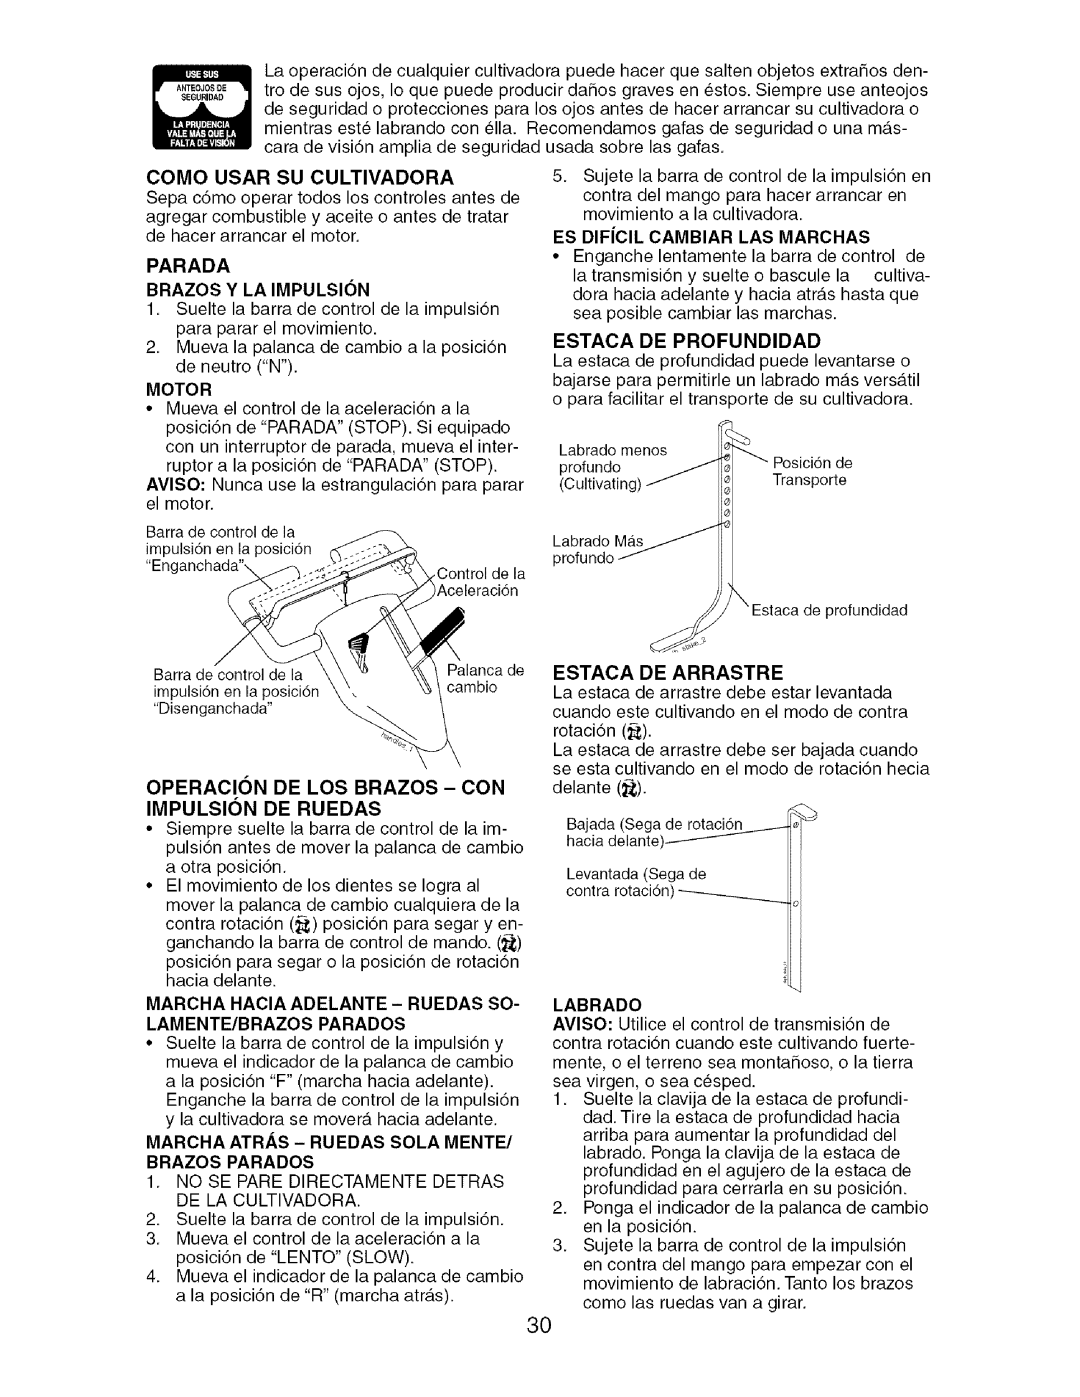 Craftsman 917.29604 owner manual Impulsion De Ruedas, Como Usar Su Cultivadora, Parada Brazos Y La Impulsion 